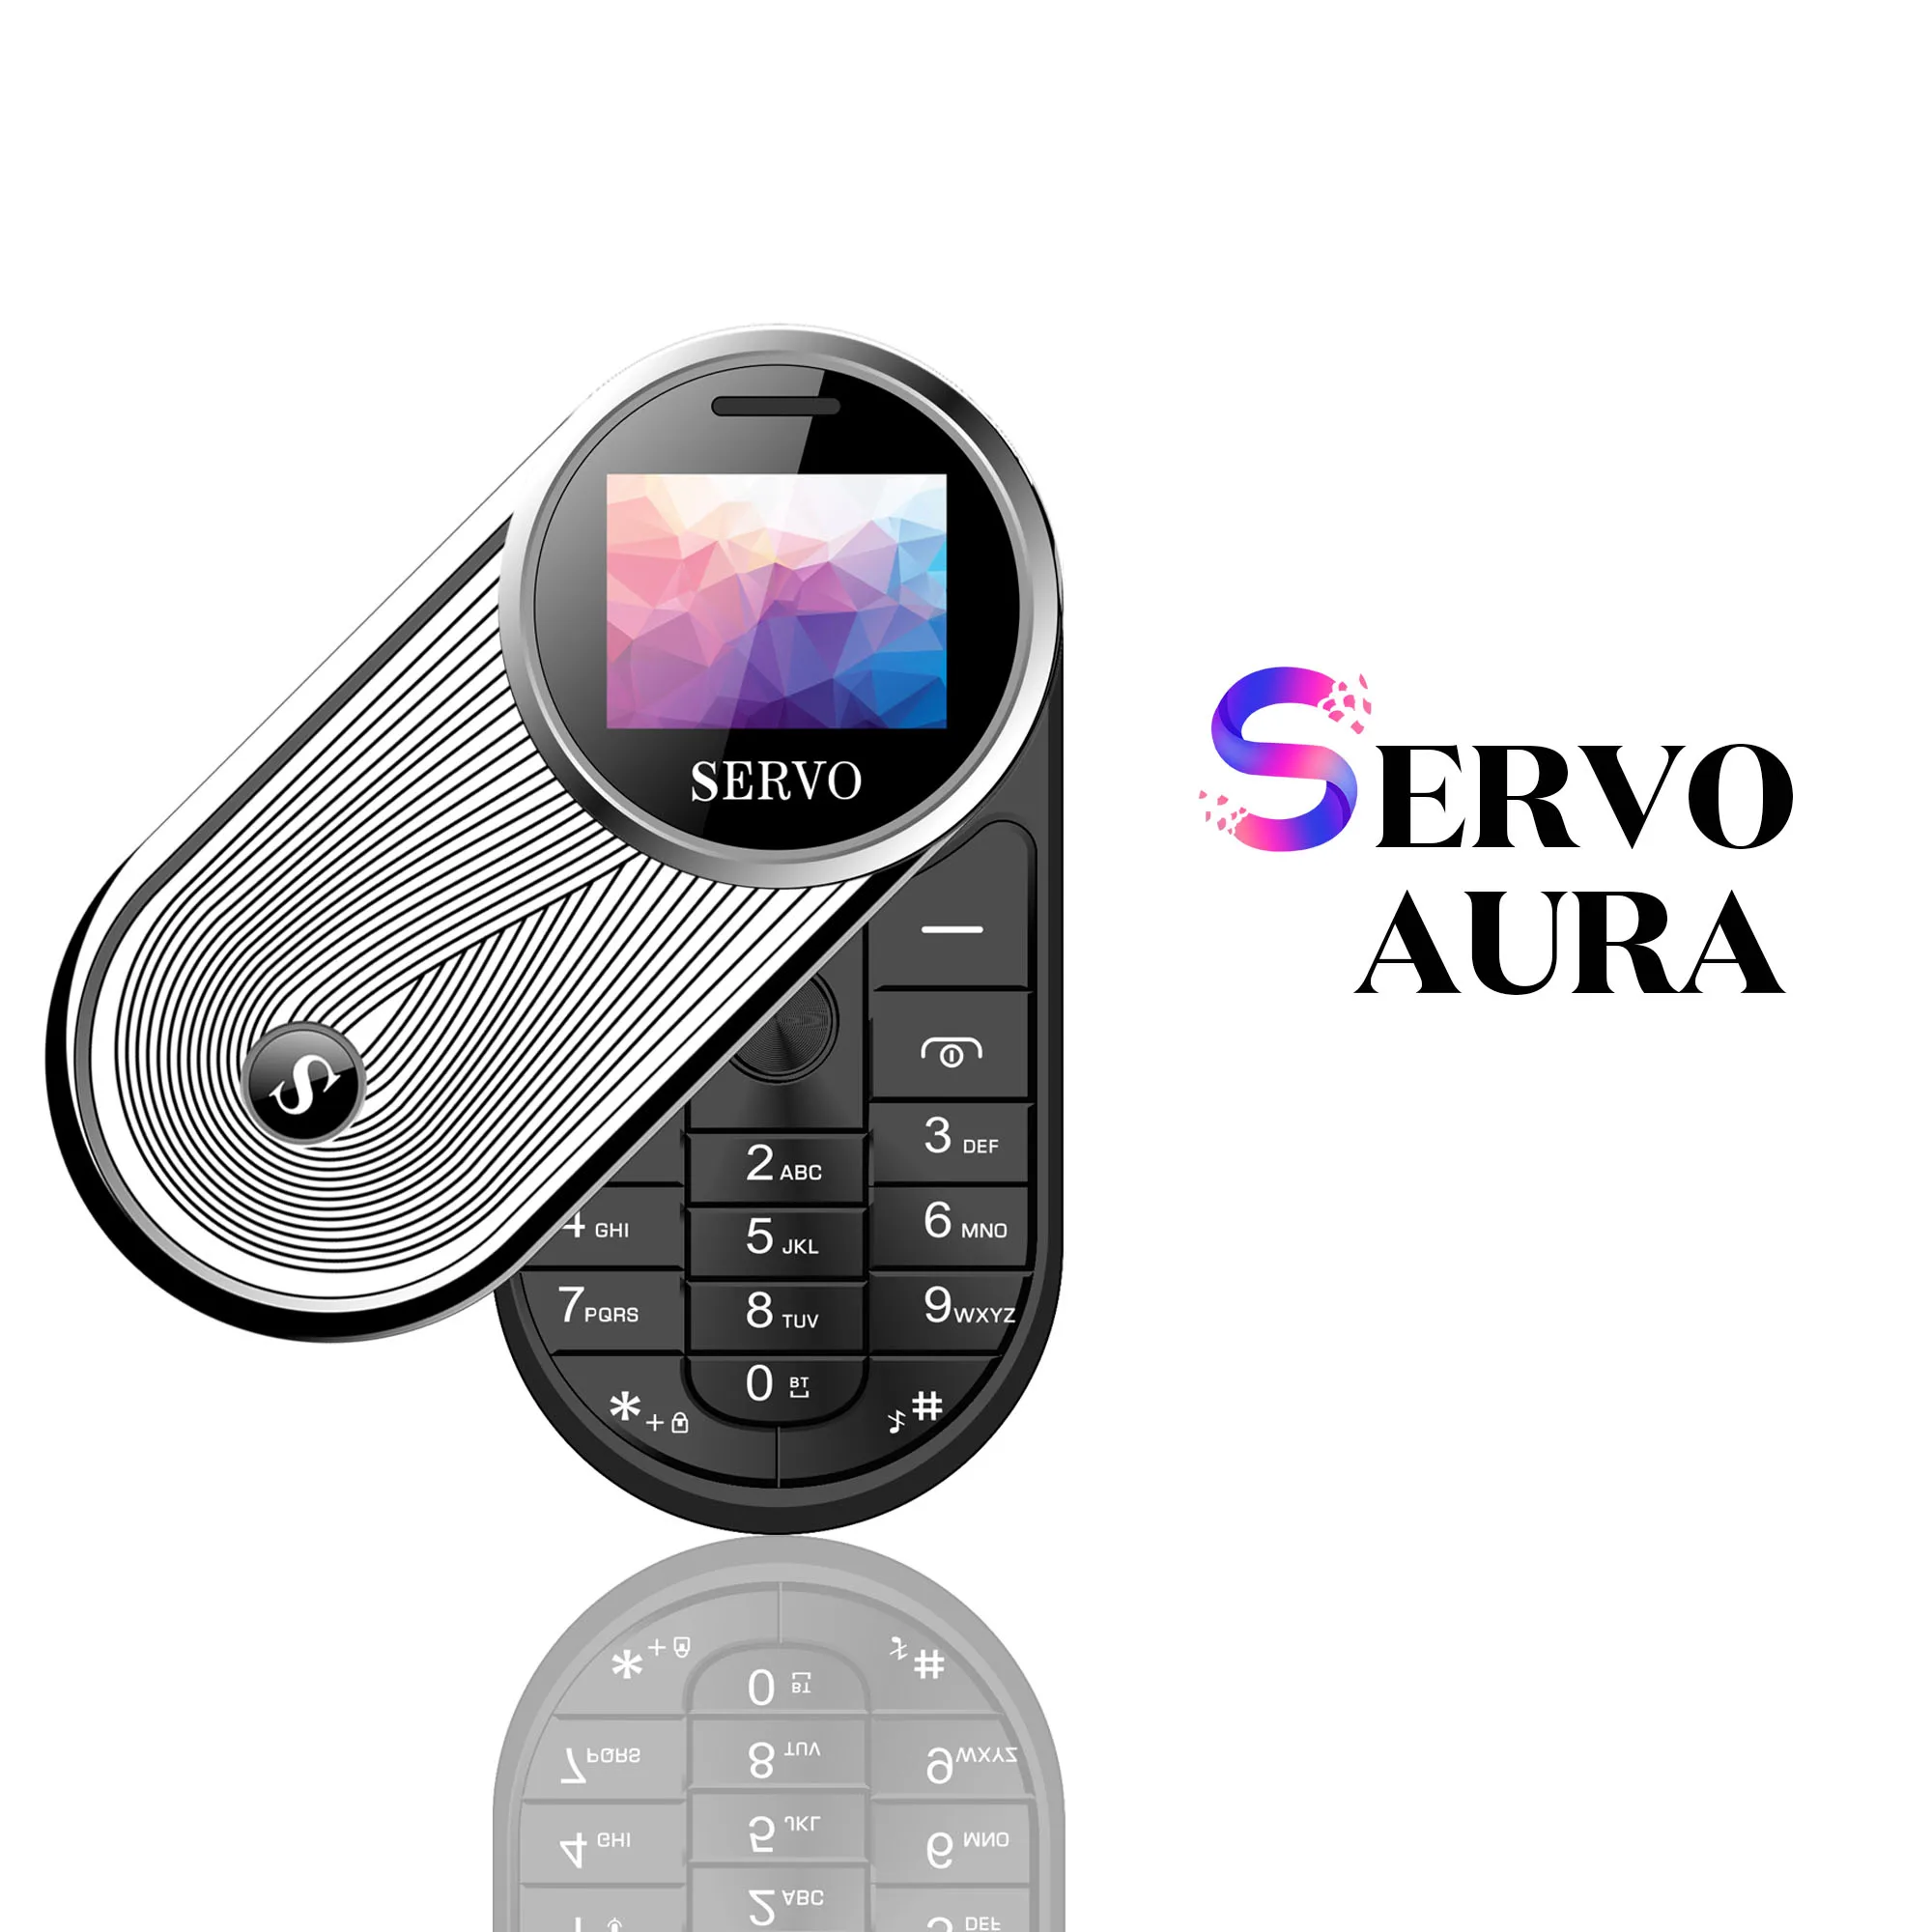 SERVO AURA вращающийся на 360 градусов мини мобильный телефон один ключ рекордер Две сим-карты вибрации маленький телефон Bluetooth номеронабор русский